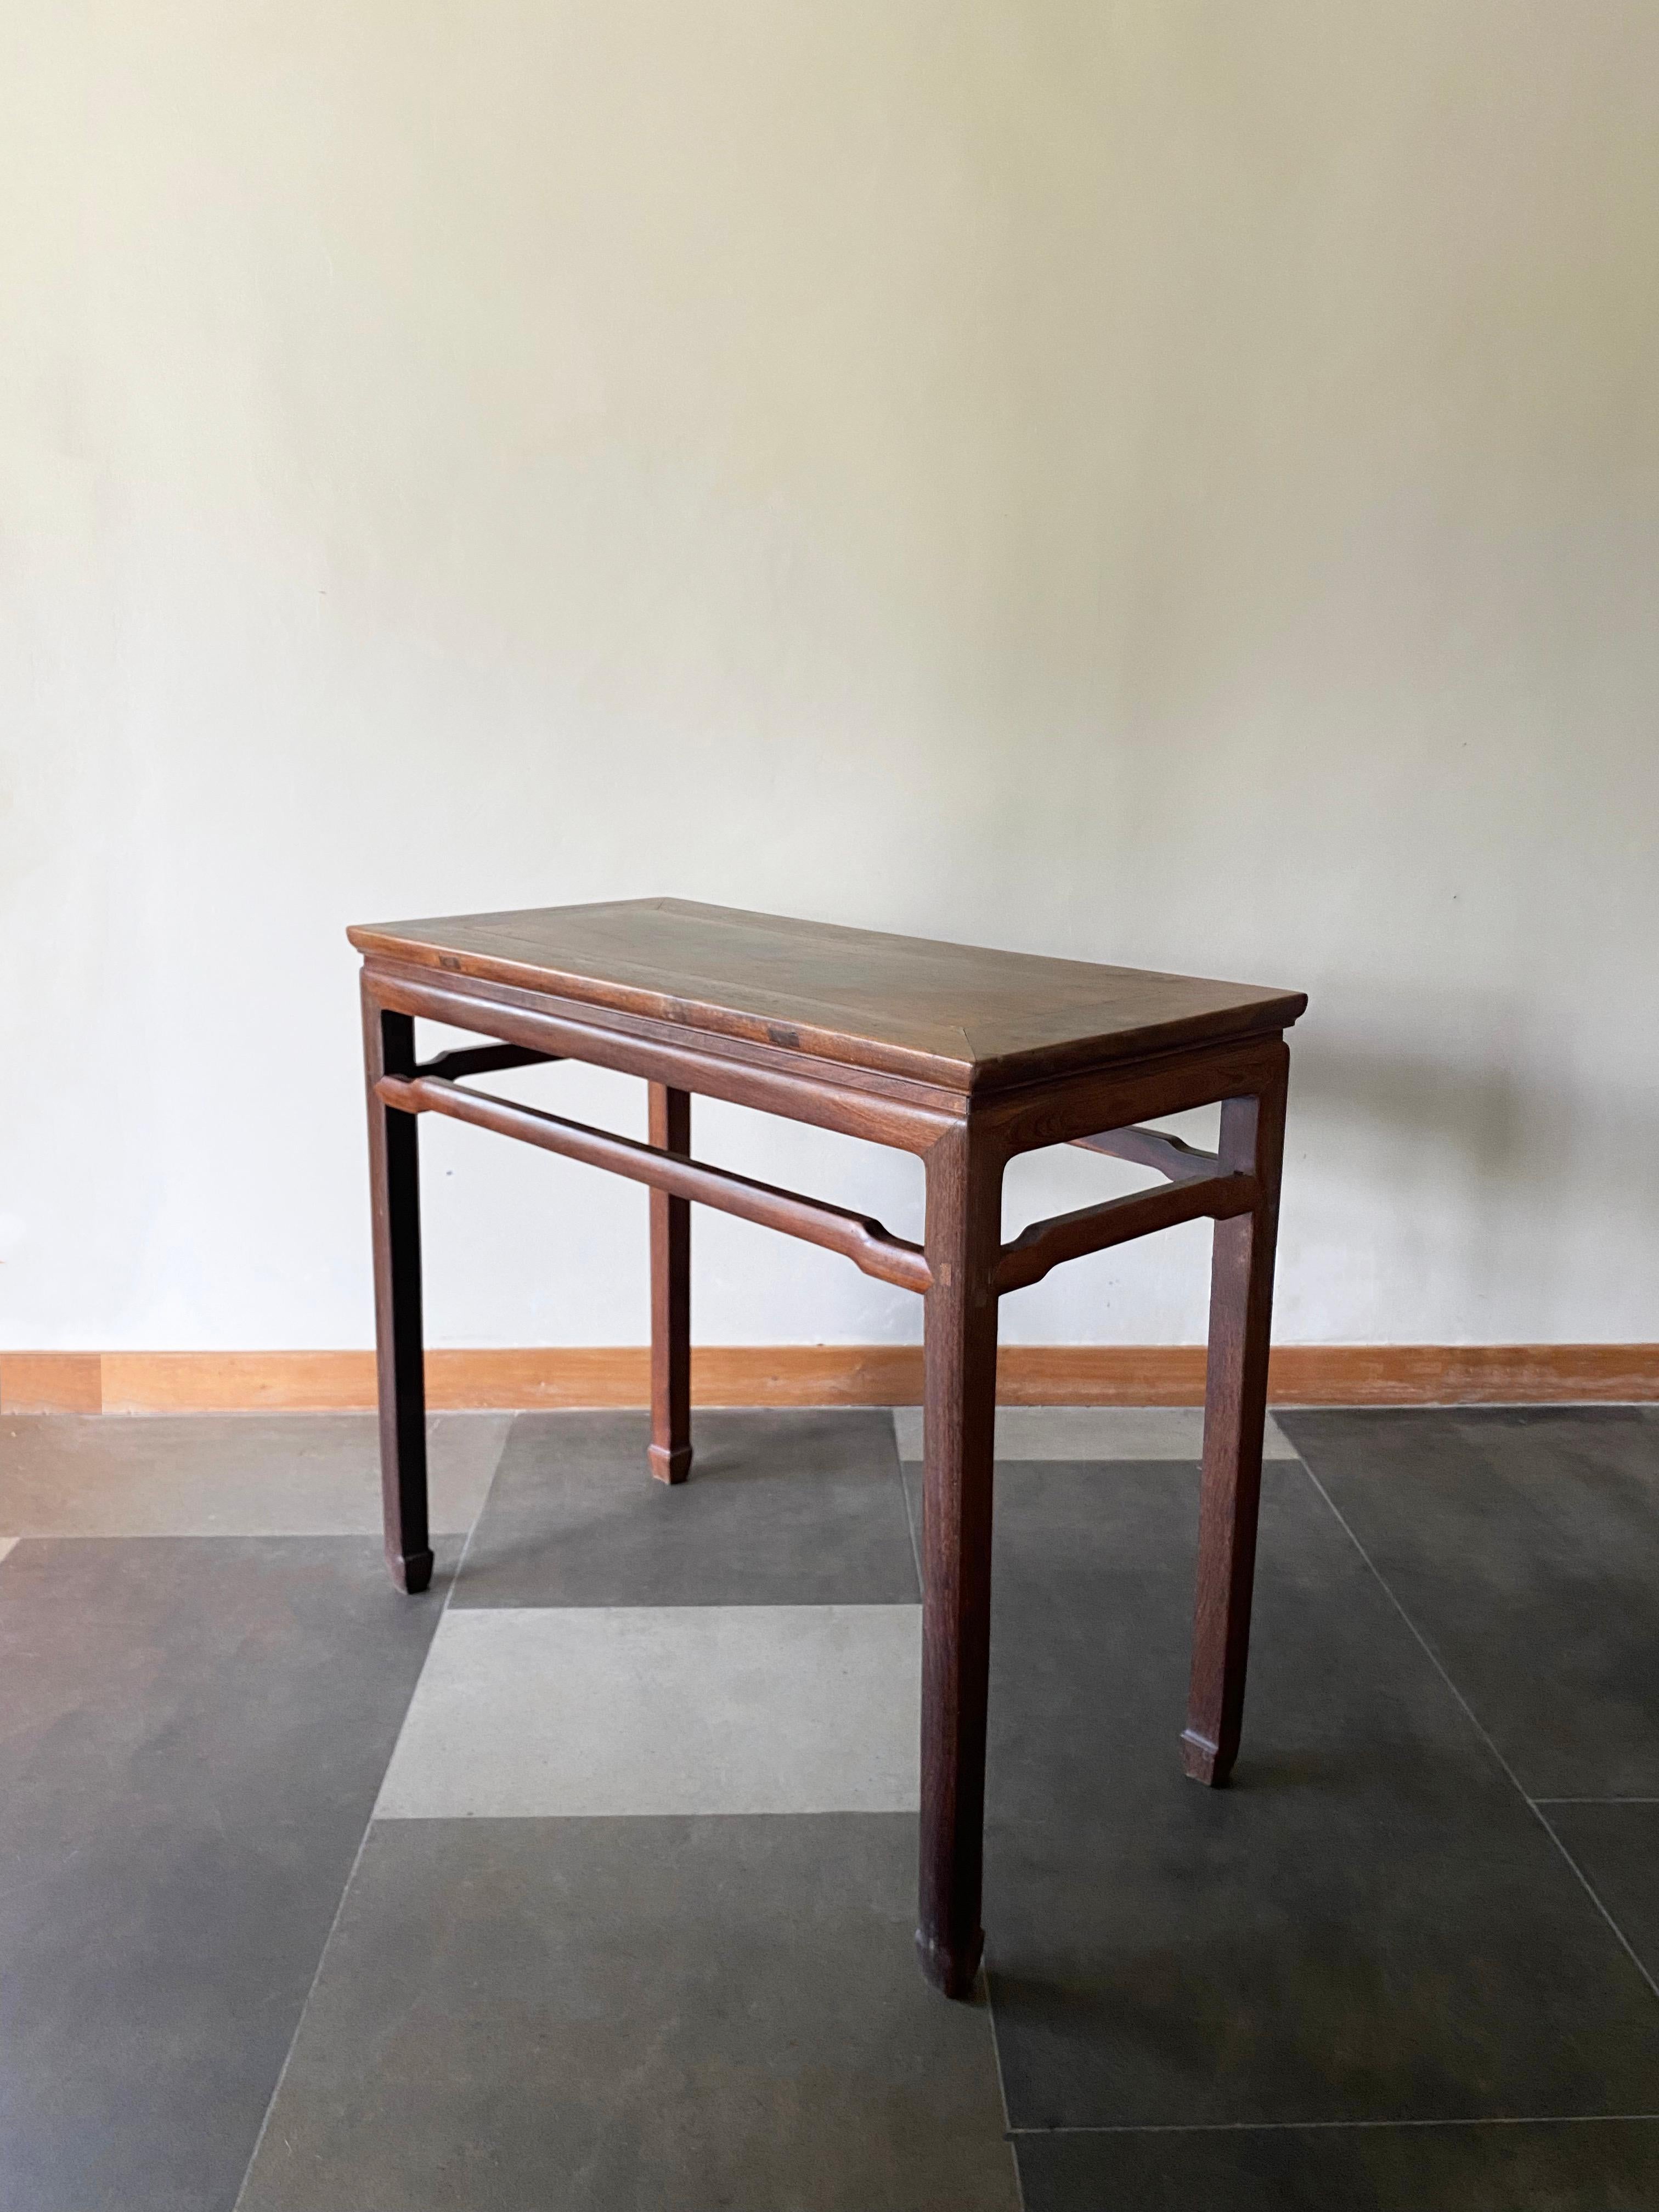 Dieser elegante Konsolentisch wurde zu Beginn des 20. Jahrhunderts in Nordchina hergestellt. Dieser aus Eisenholz gefertigte Tisch ist einzigartig, da die meisten Tische dieses Stils aus Ulmenholz gefertigt wurden. Er zeichnet sich durch elegante